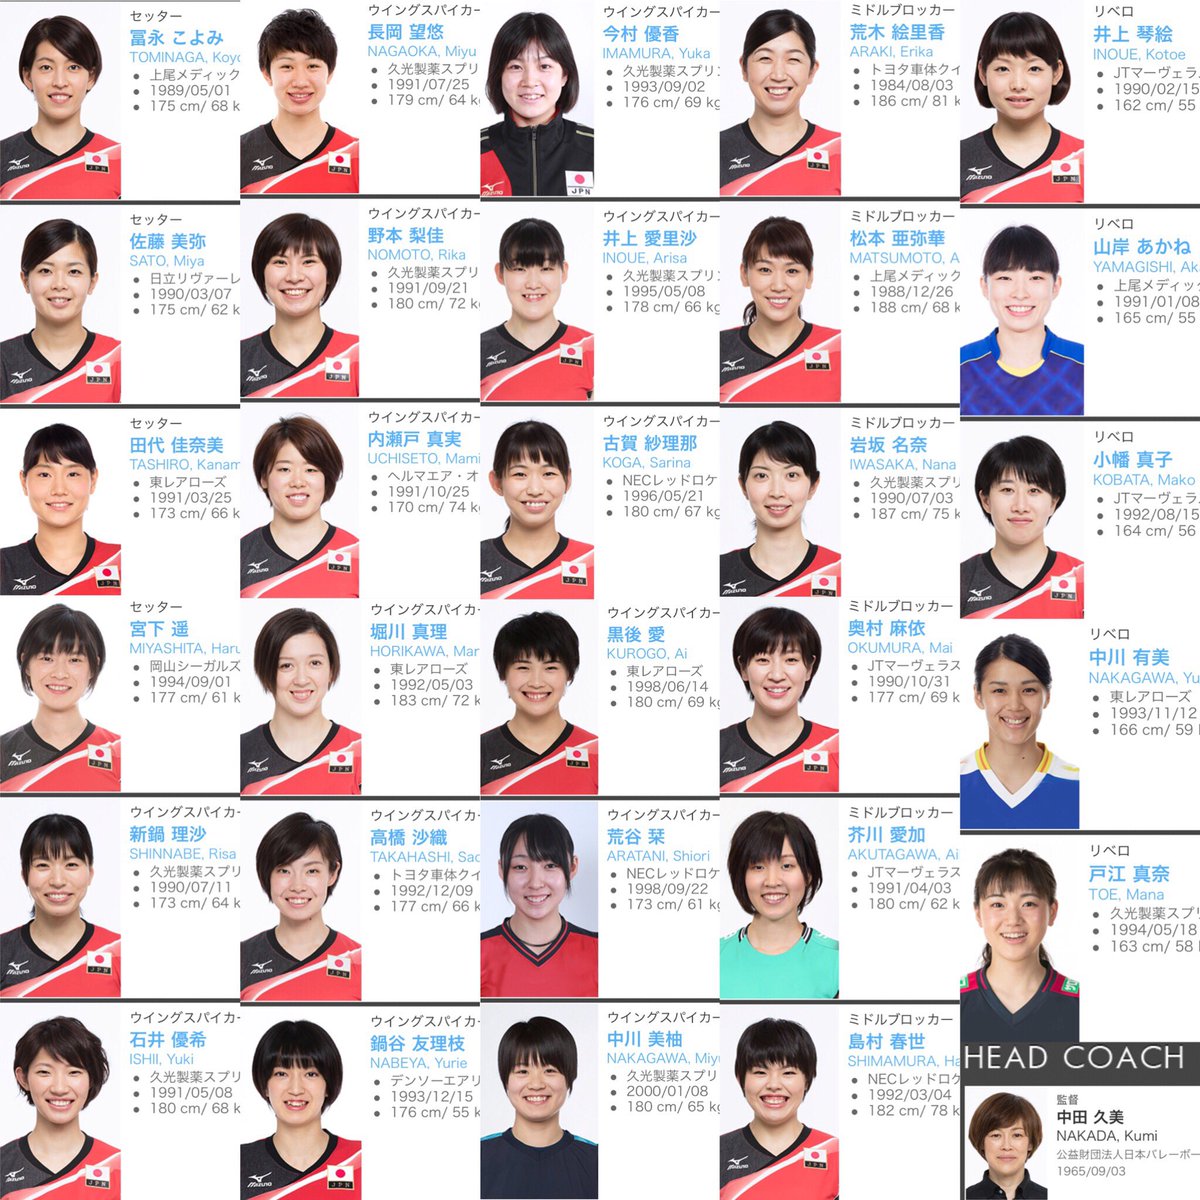 メンバー バレー 全日本 女子 日本女子バレーボール代表選手の一覧